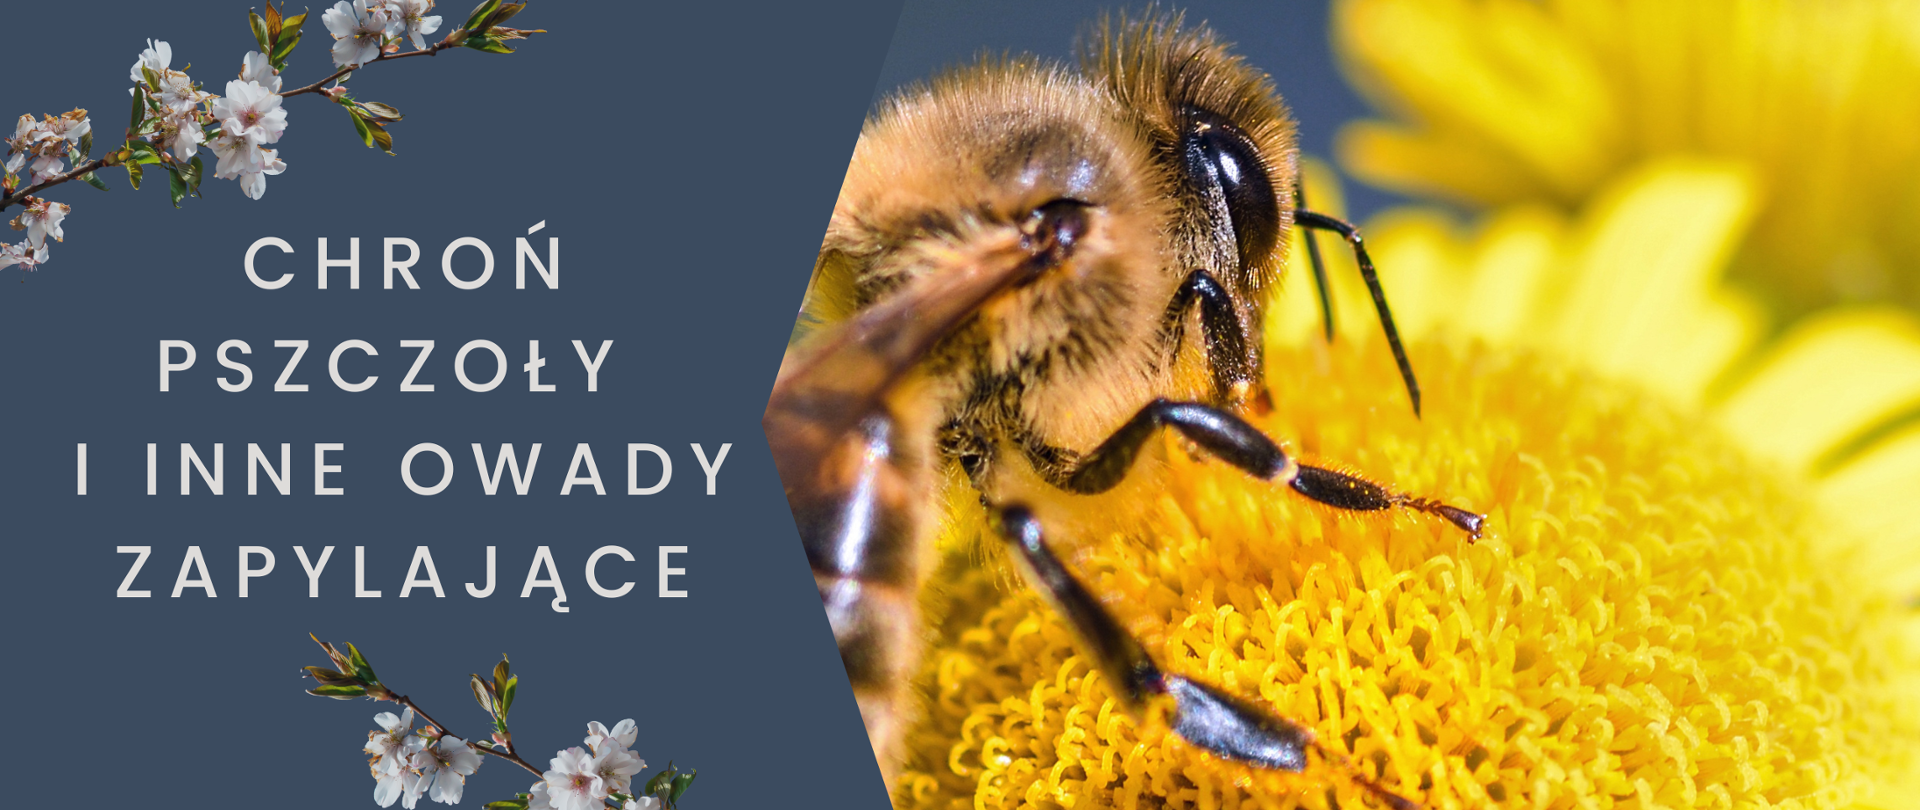 gałązki z kwiatami, pszczoła na kwiatku oraz hasło: Chroń pszczoły i inne owady zapylające